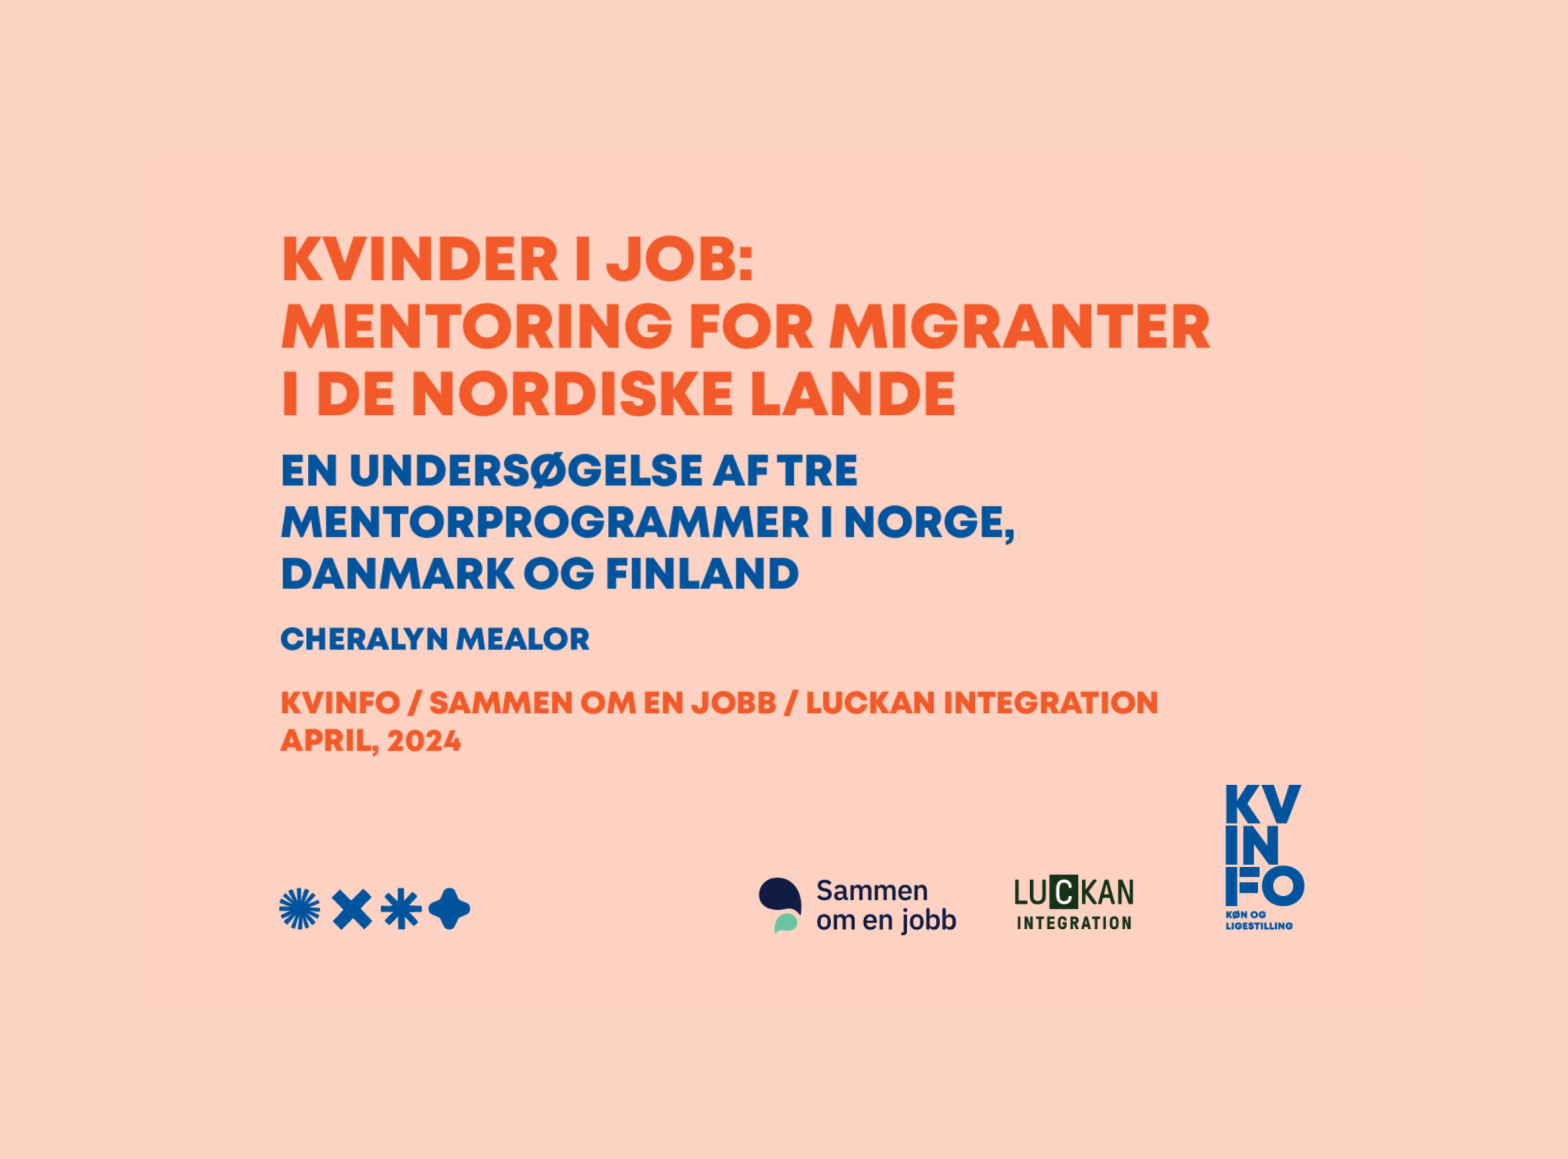 The Kvinder i Job report is published!